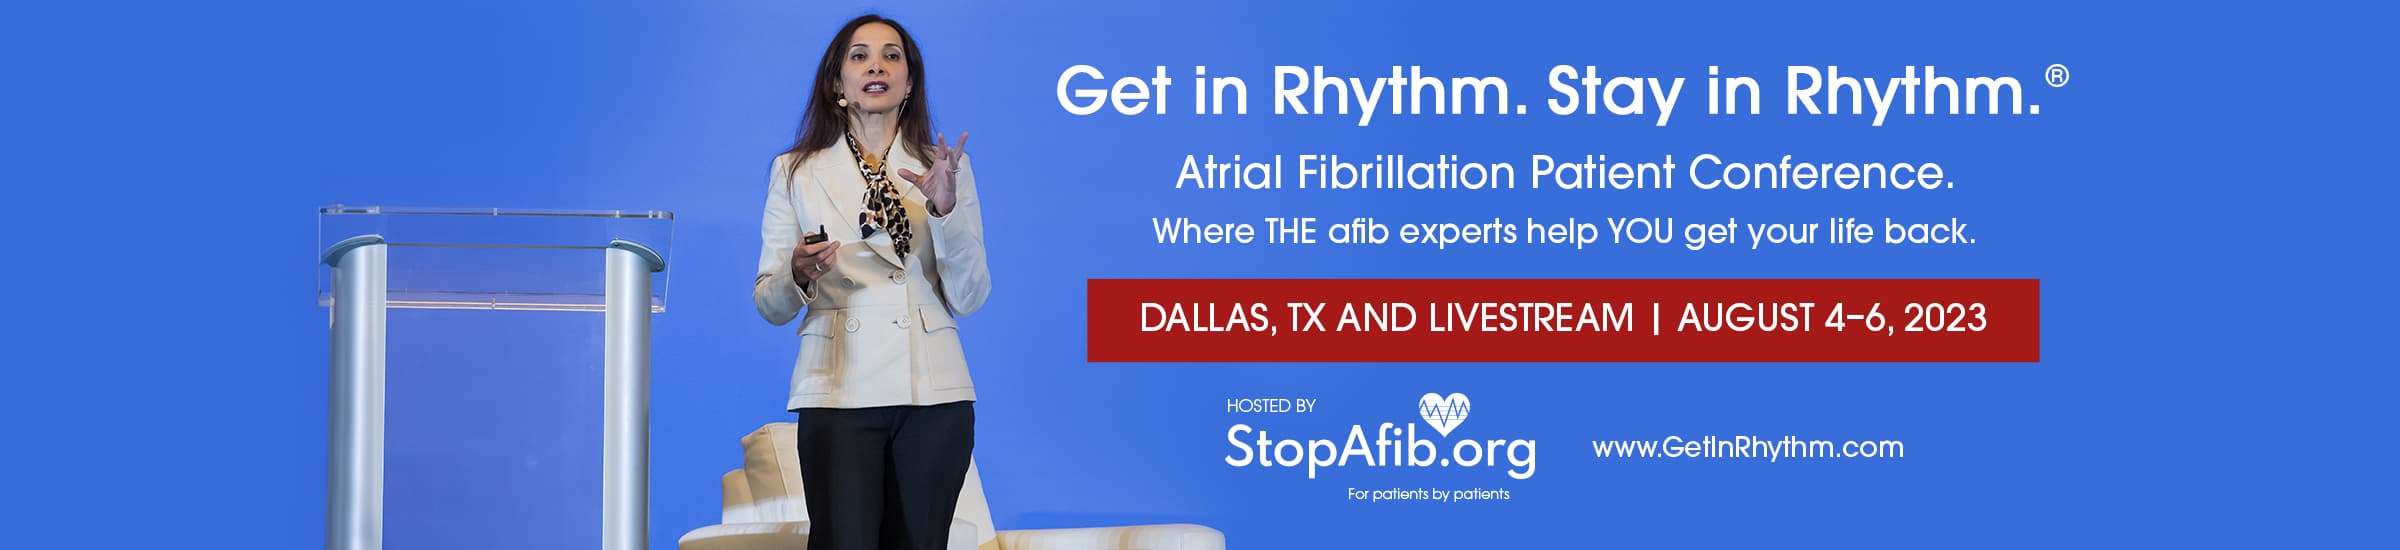 Get in Rhythm. Stay in Rhythm. Afib Conference August 4-6 in Dallas, TX